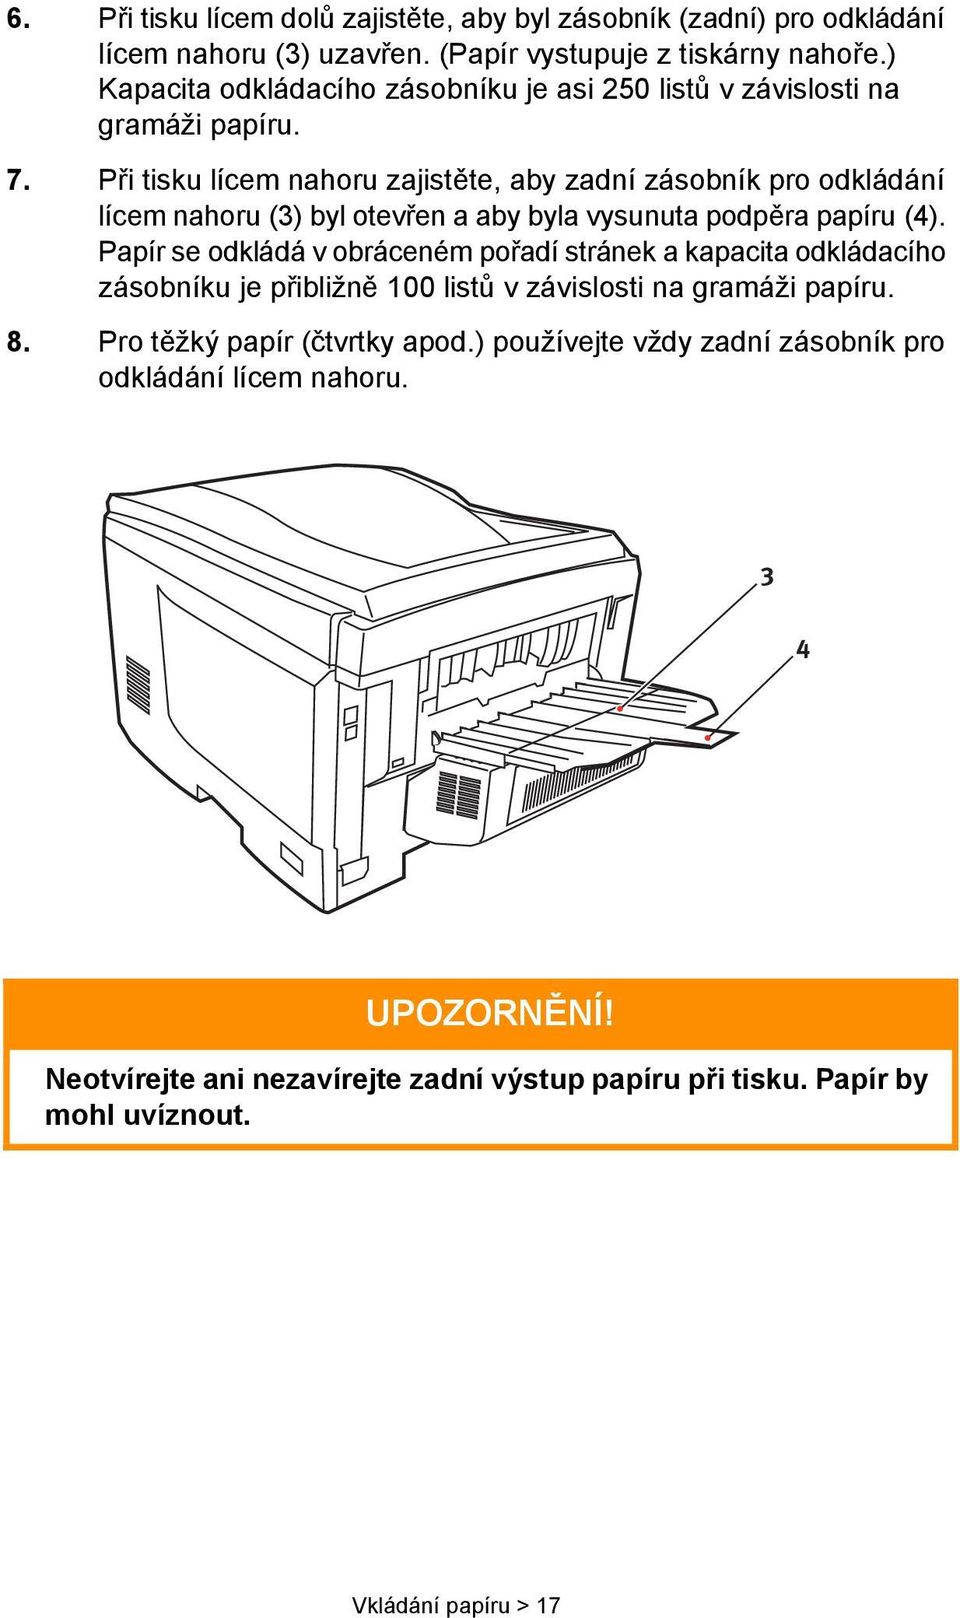 Při tisku lícem nahoru zajistěte, aby zadní zásobník pro odkládání lícem nahoru (3) byl otevřen a aby byla vysunuta podpěra papíru (4).